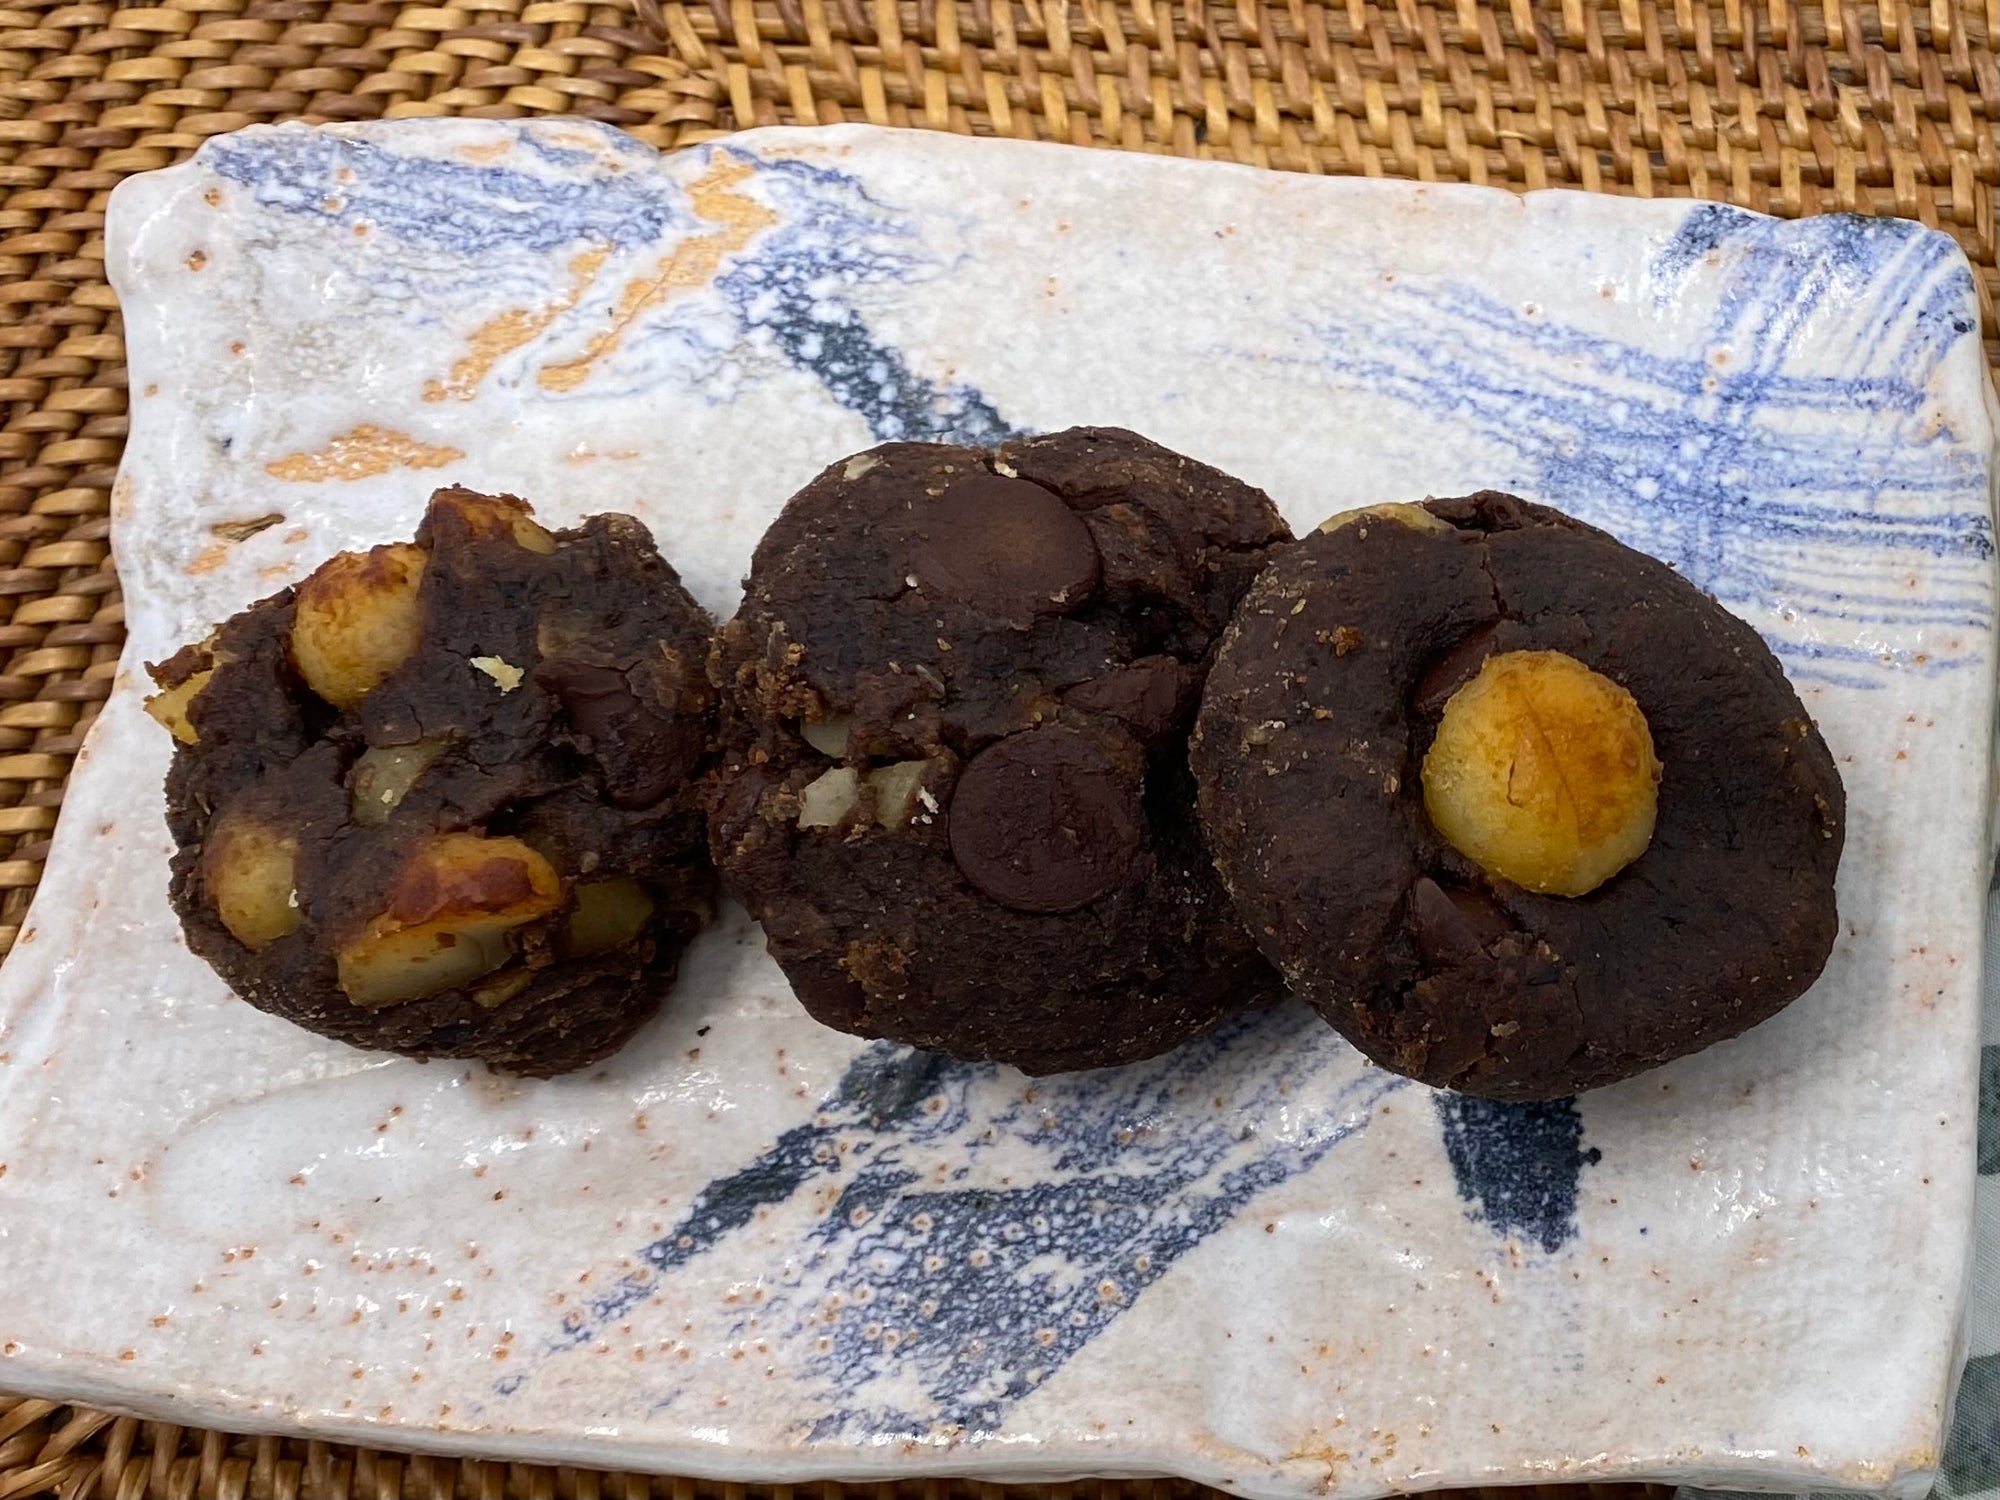 Black bean chocolate cookies